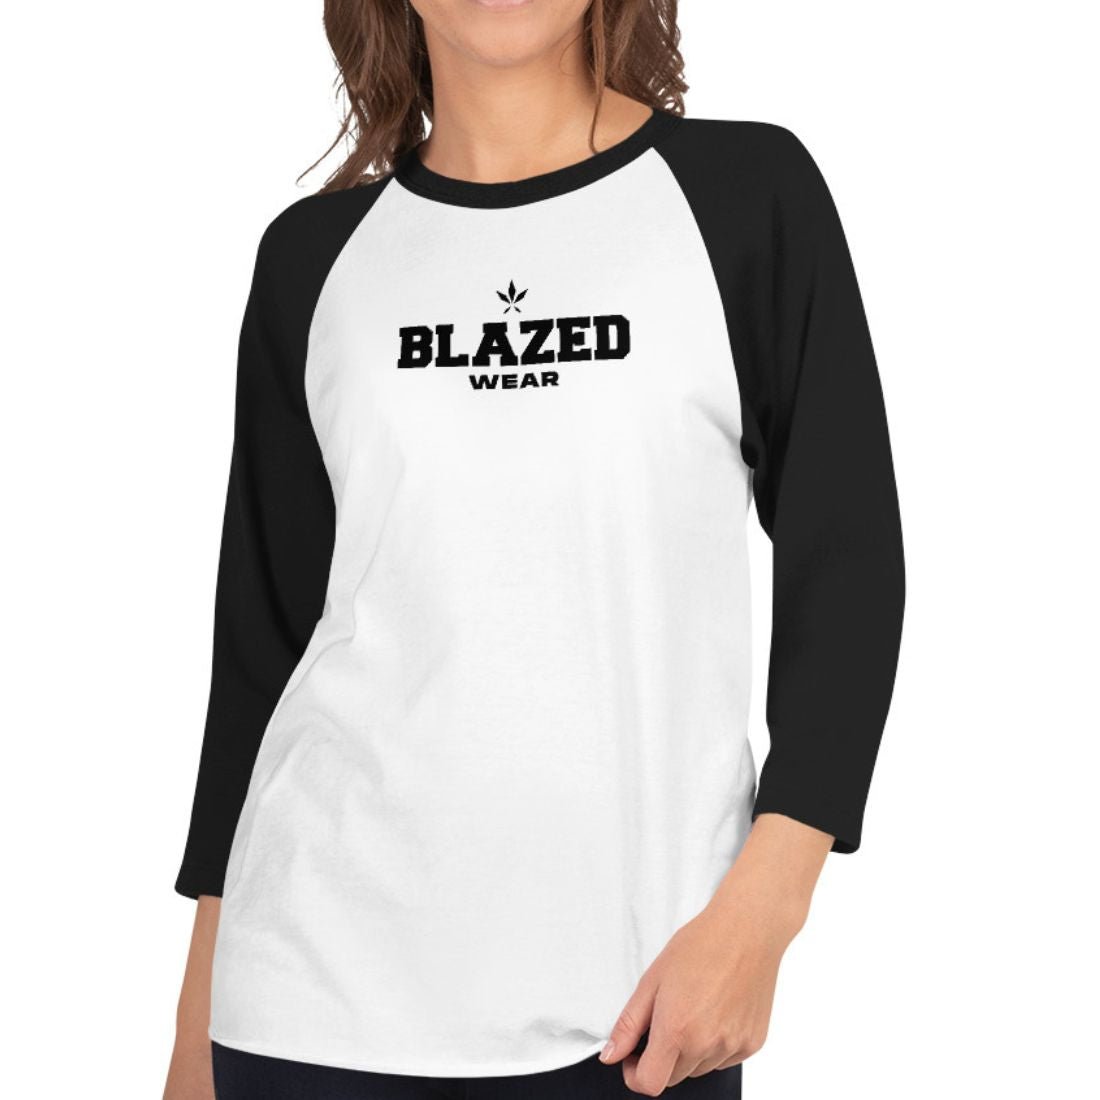 Blazed Wear Classic Raglan Tee - White/Black - Blazed Wear